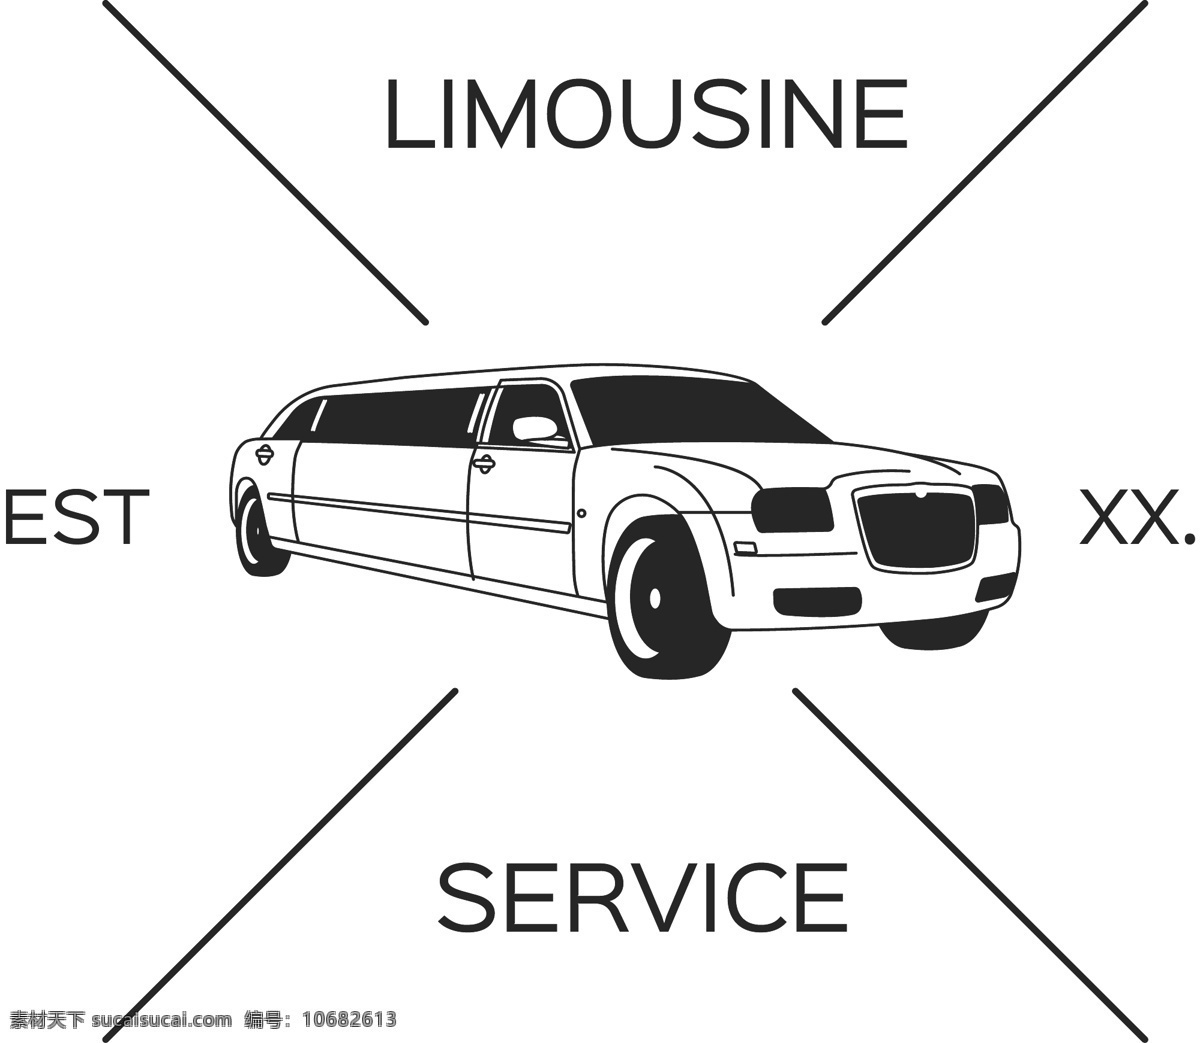 豪华 轿车 标志设计 图案 豪华轿车 标志 设计图案